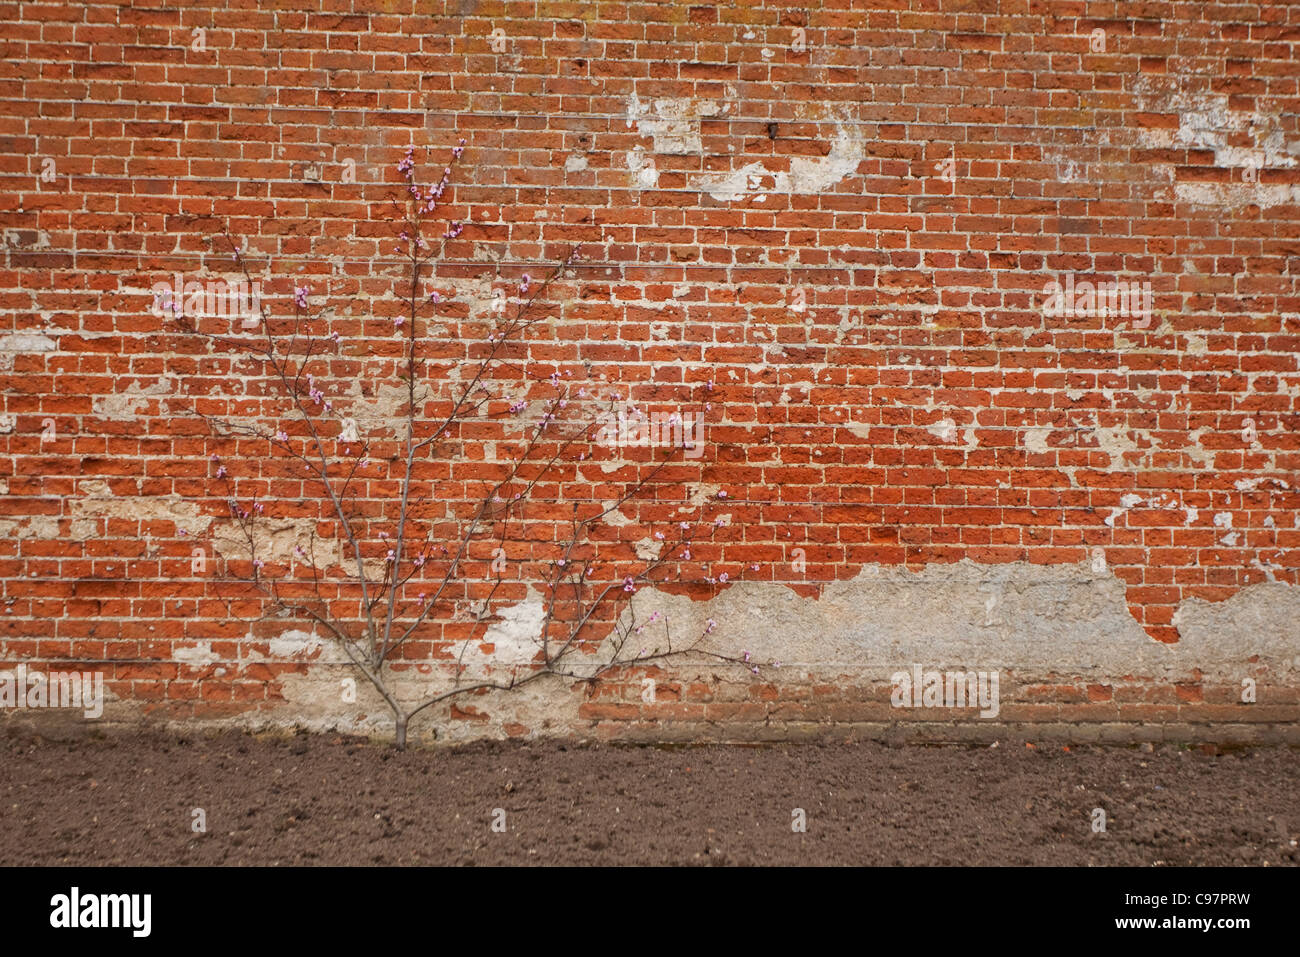 Close-up of a wall showing crumbling brickwork at Blickling Hall Stock Photo